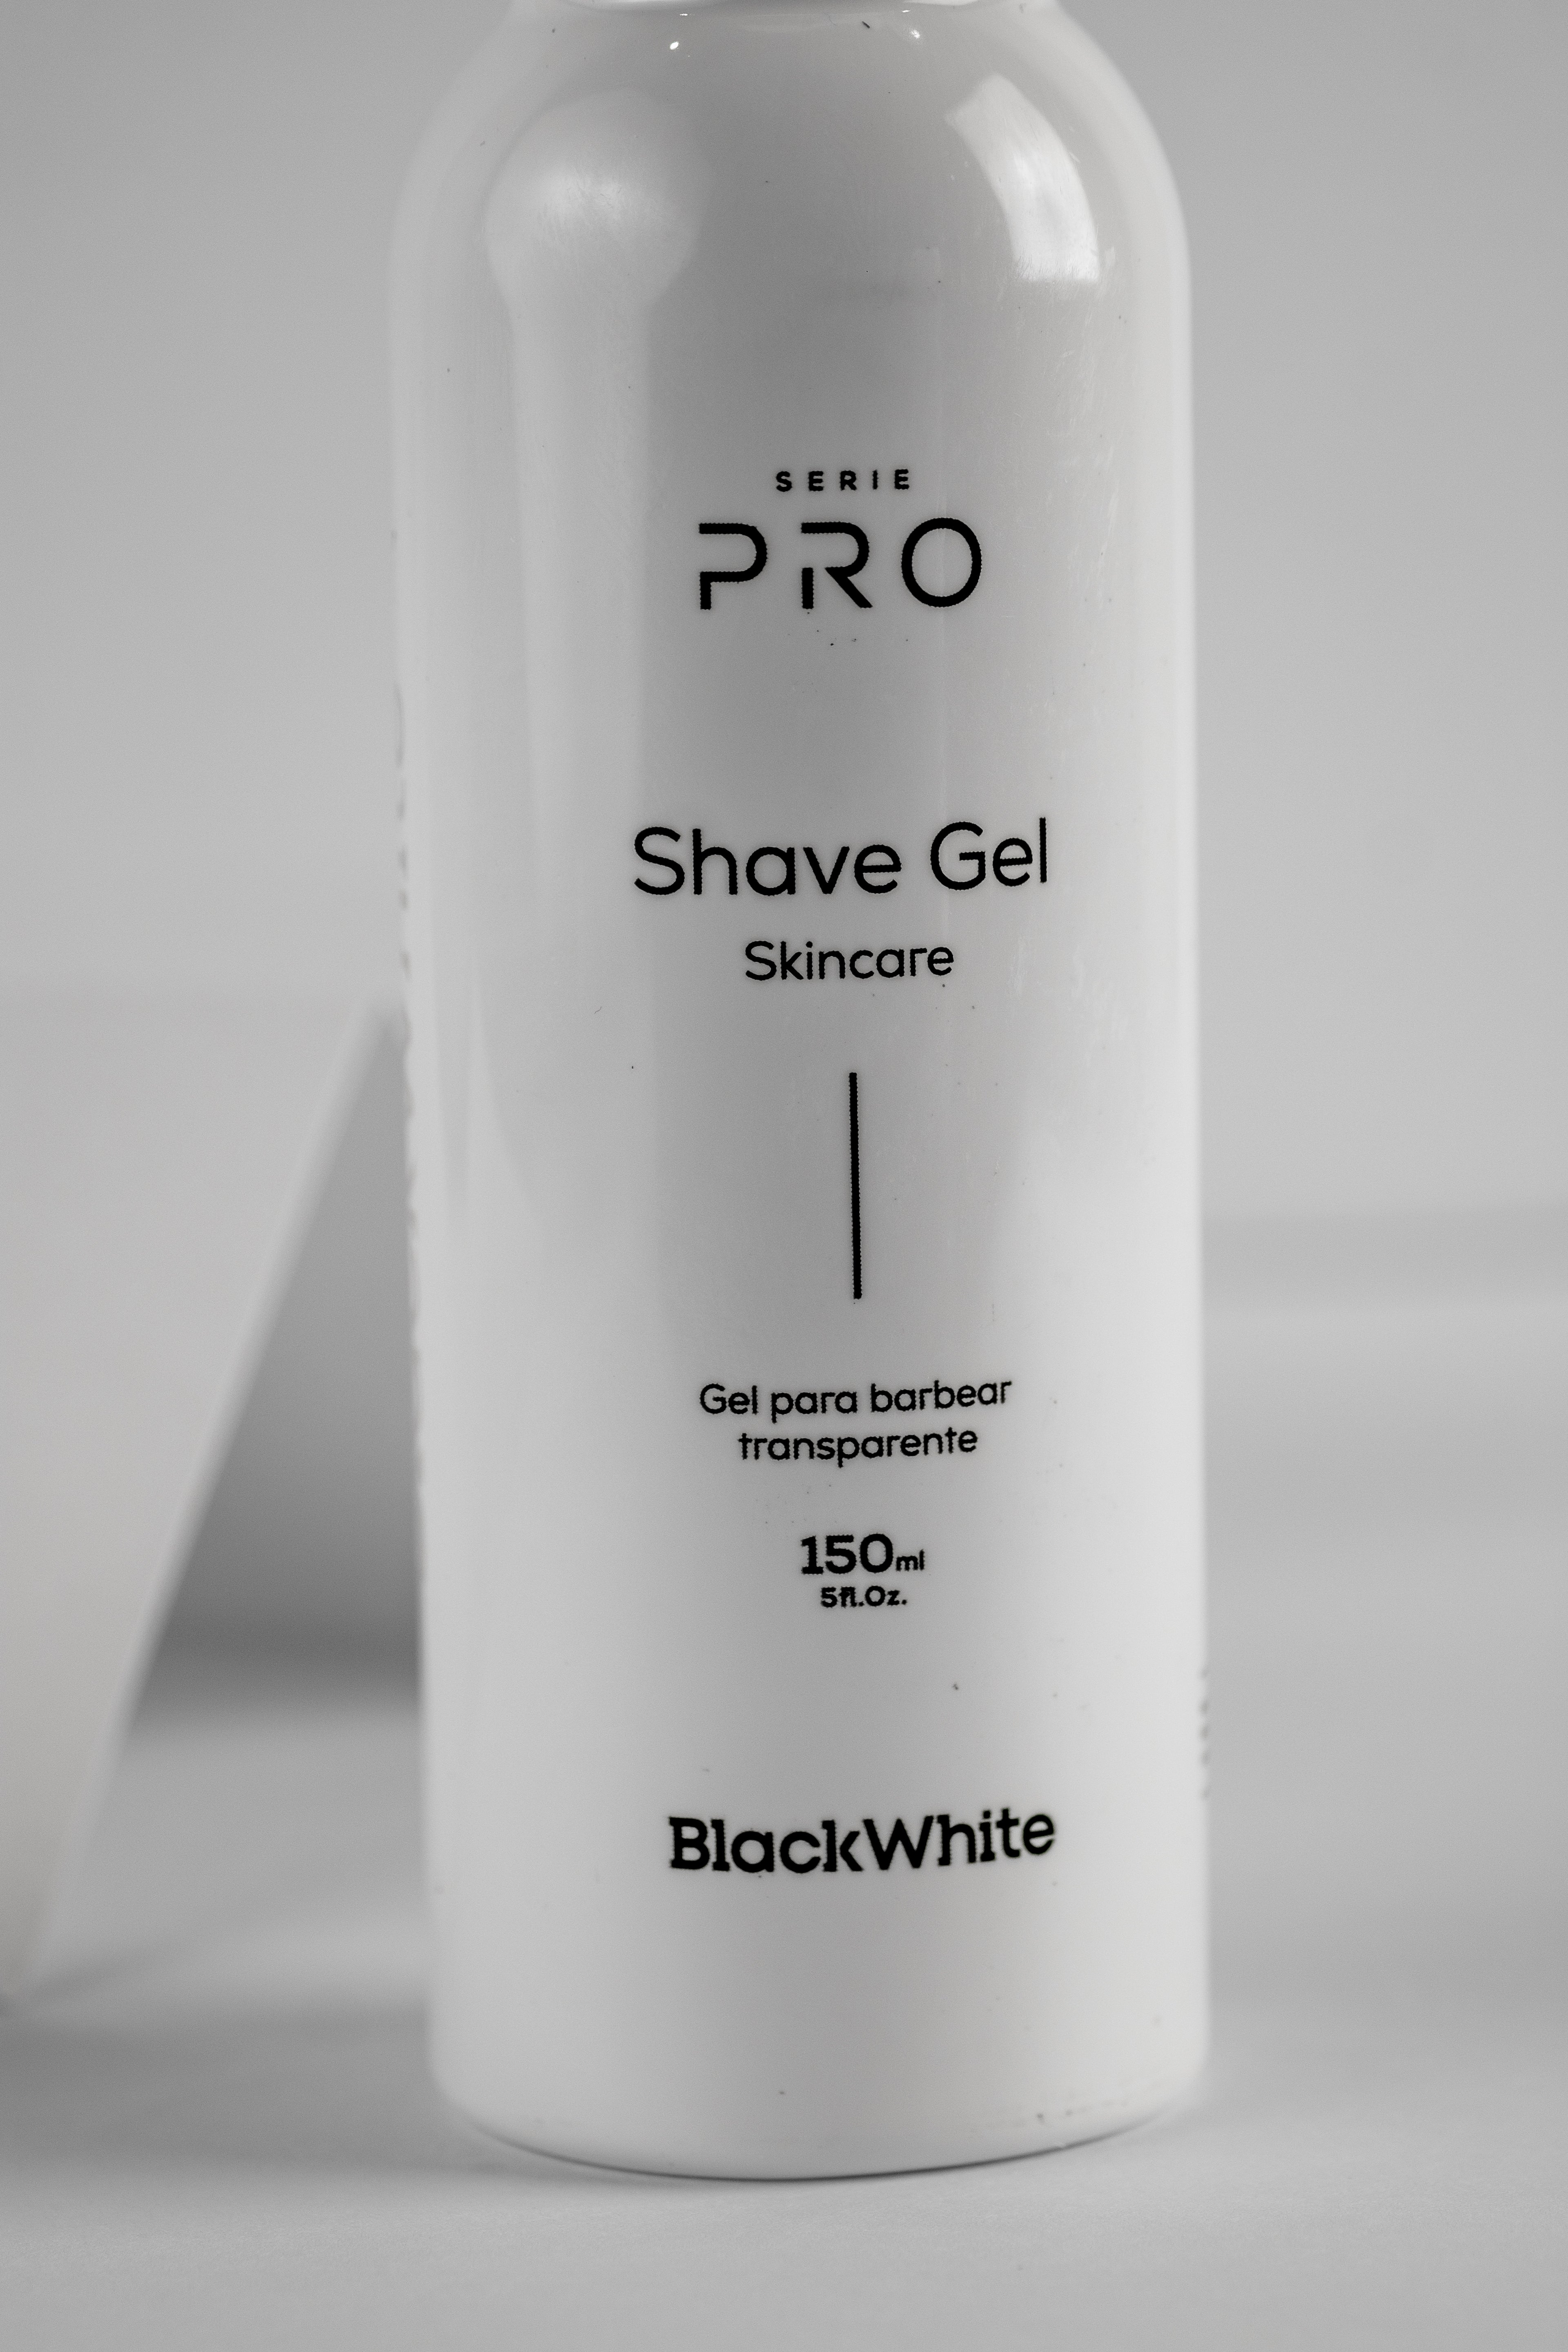 Shave Gel PRO